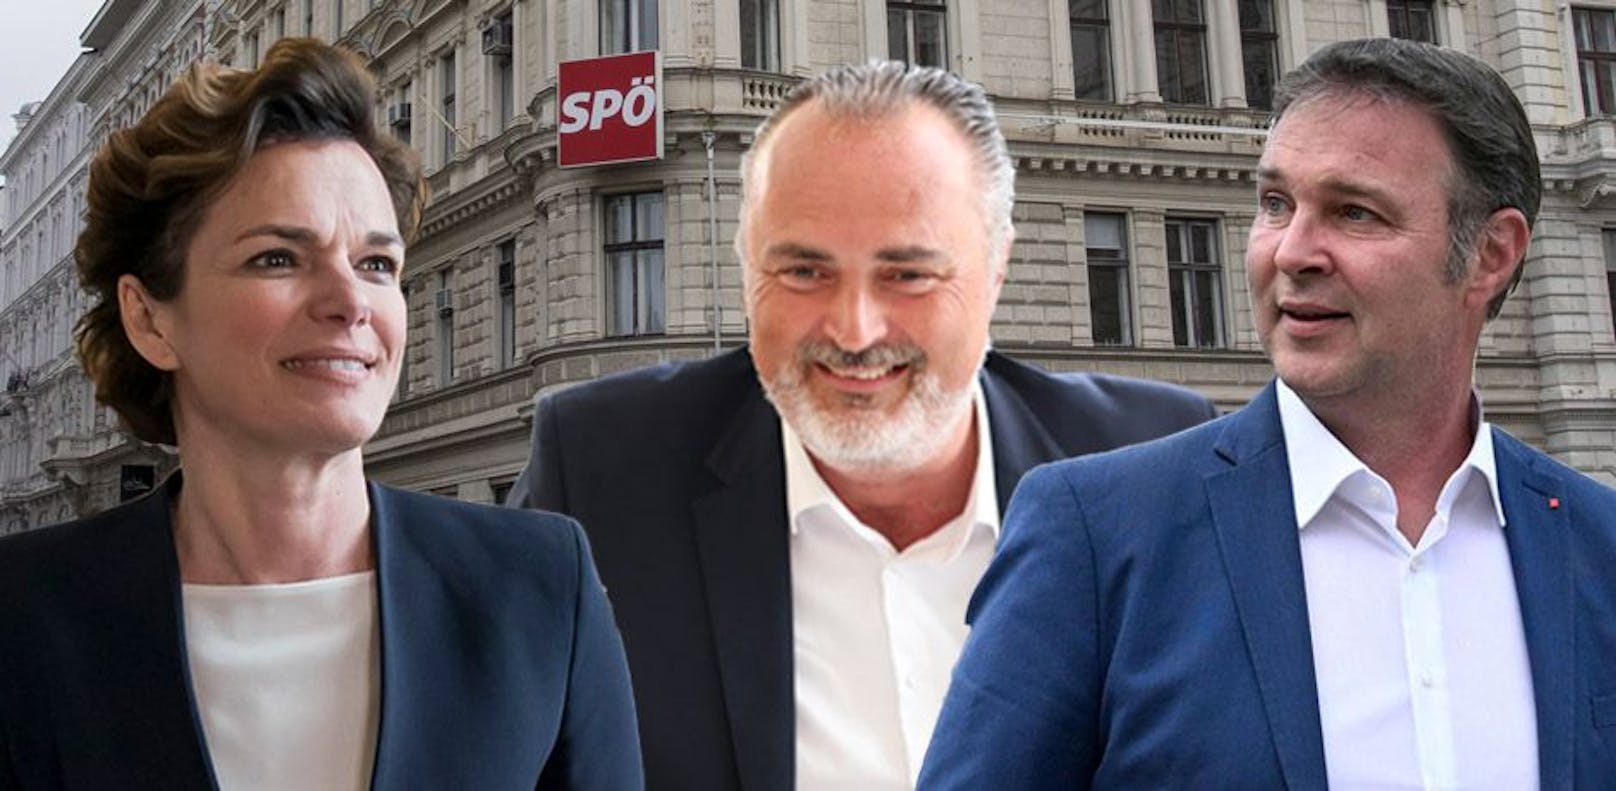 Langes Warten auf SPÖ-Ergebnis – wer die besten Chancen hat